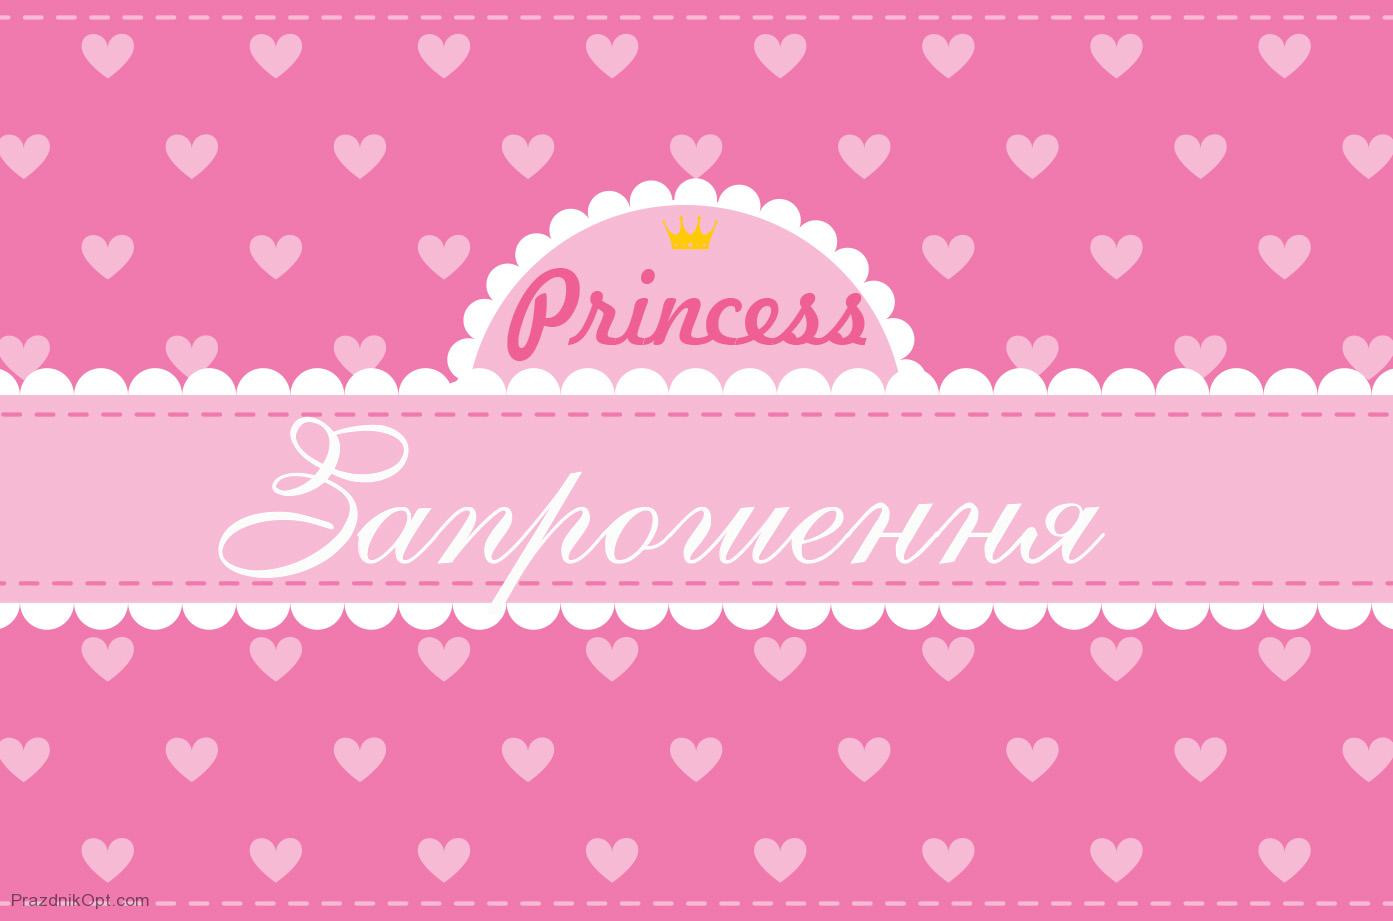 Запрошення Princess